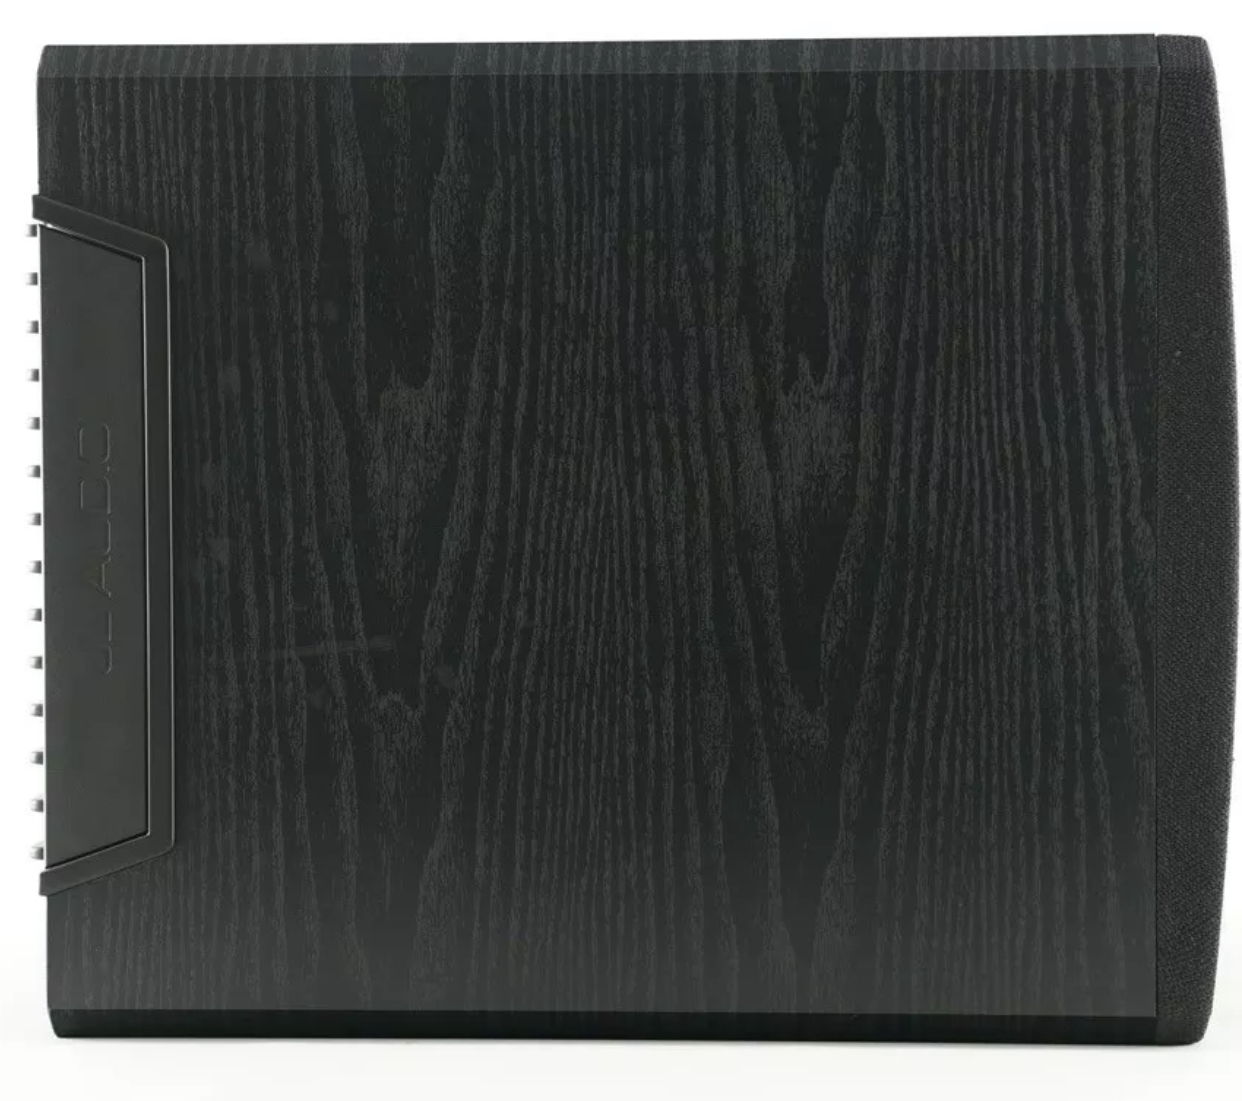 JL Audio E110 Black Ash New 'Open Boxes" set available. 6